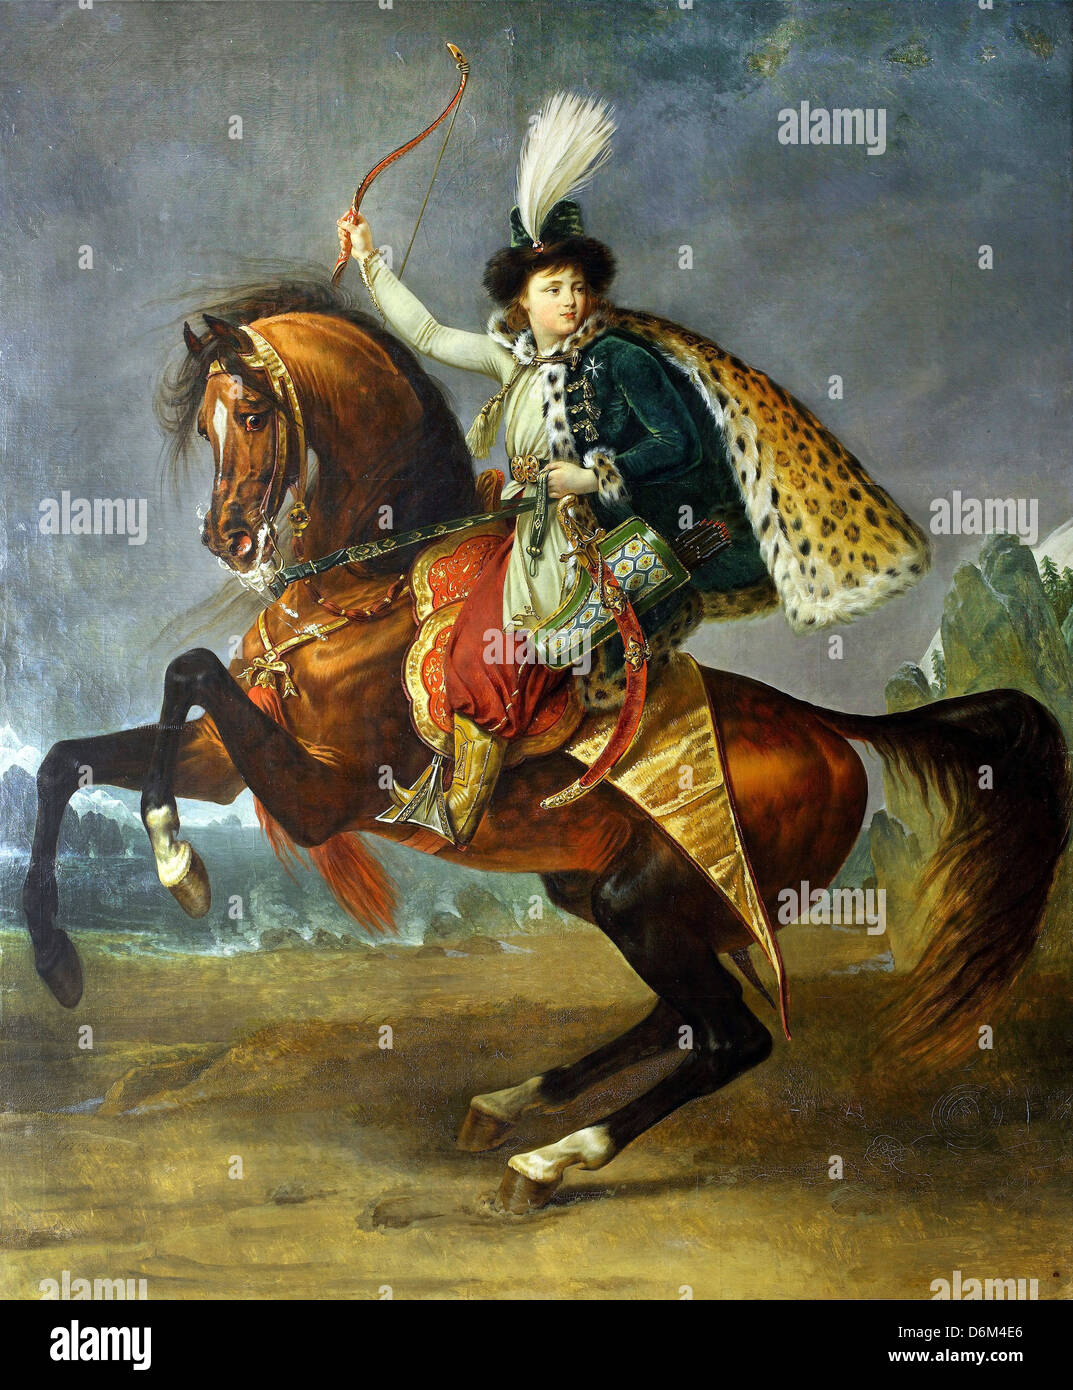 Antoine-Jean Gros, Equestrian Porträt des Fürsten Boris Jussupow 1809 Öl auf Leinwand. Puschkin-Museum, Moskau Stockfoto